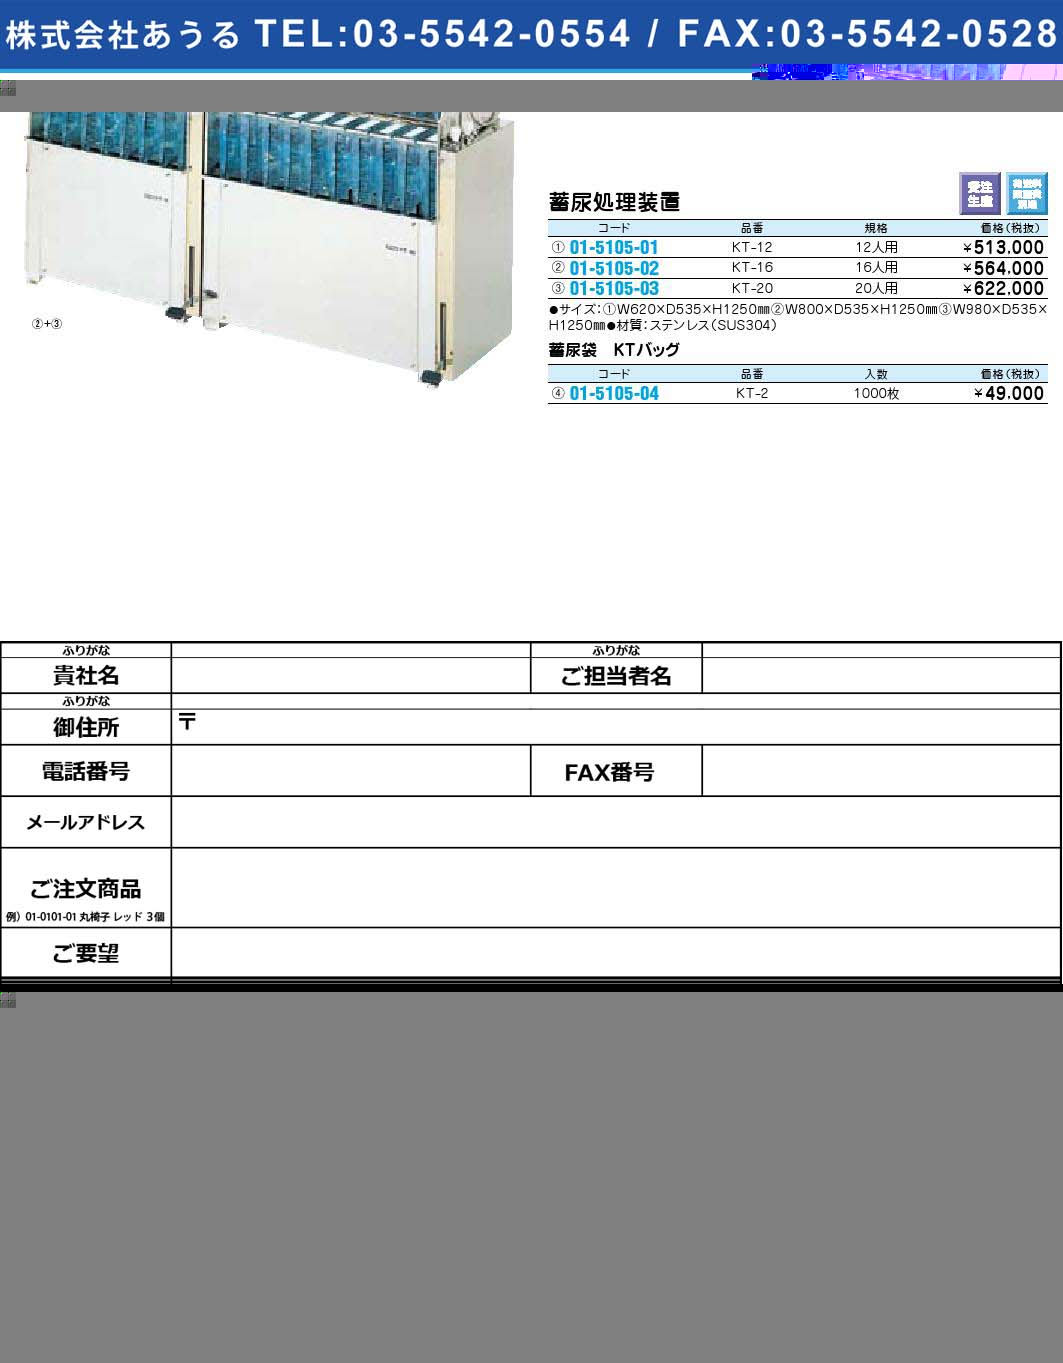 蓄尿処理装置 KT-20(01-5105-03)